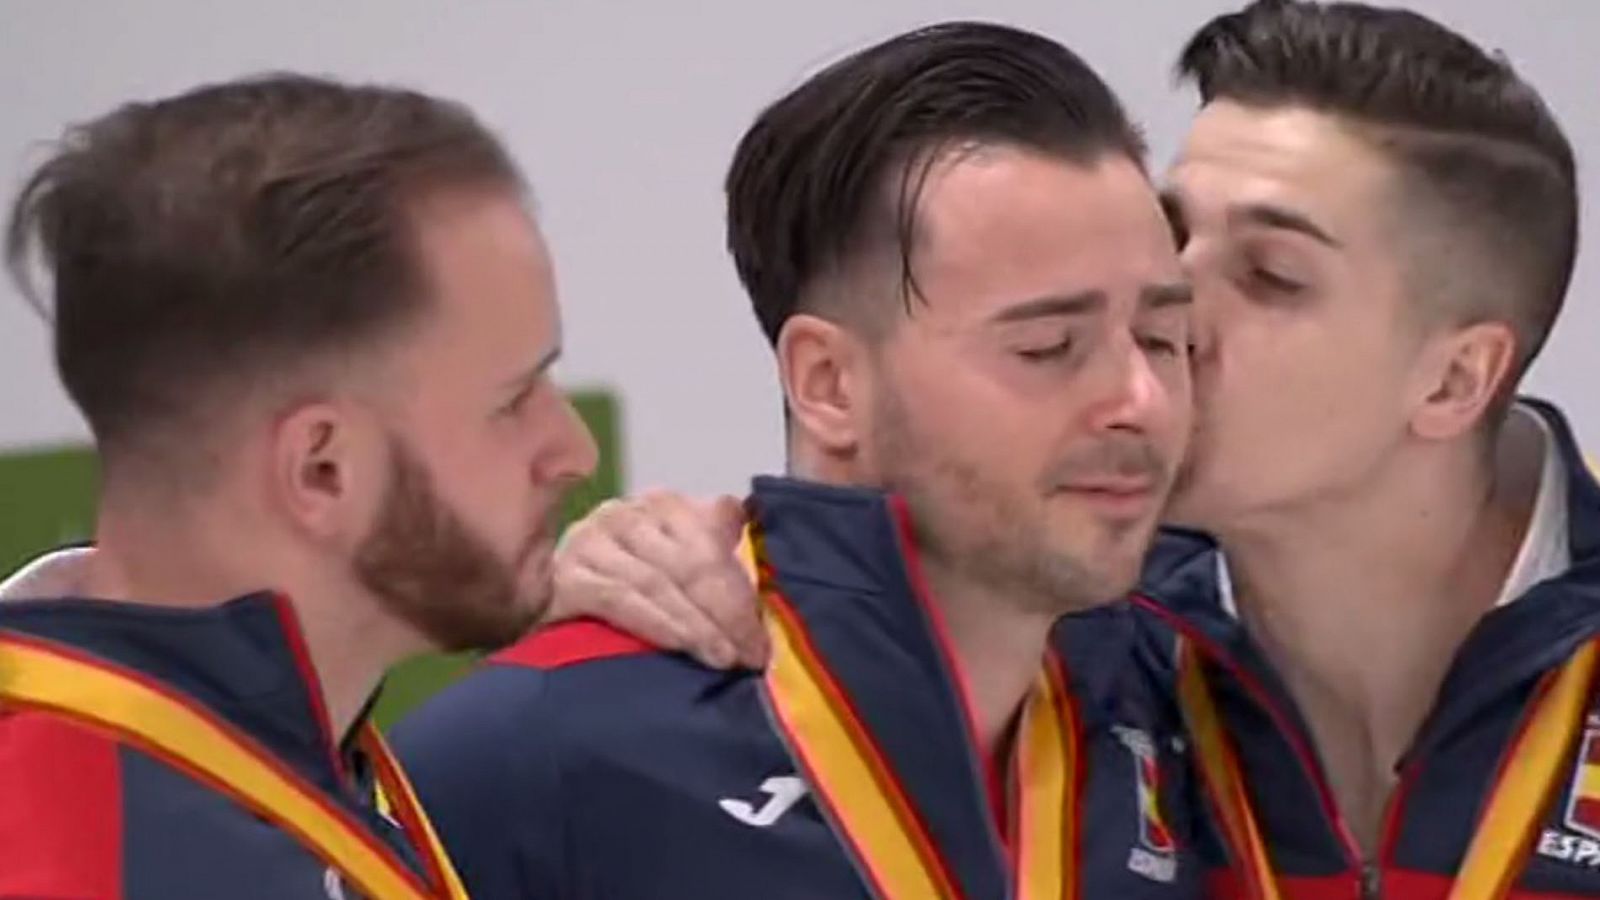 Europeos de Kárate 2019 | El equipo de kata español se funde en un abrazo entre lágrimas en el podio